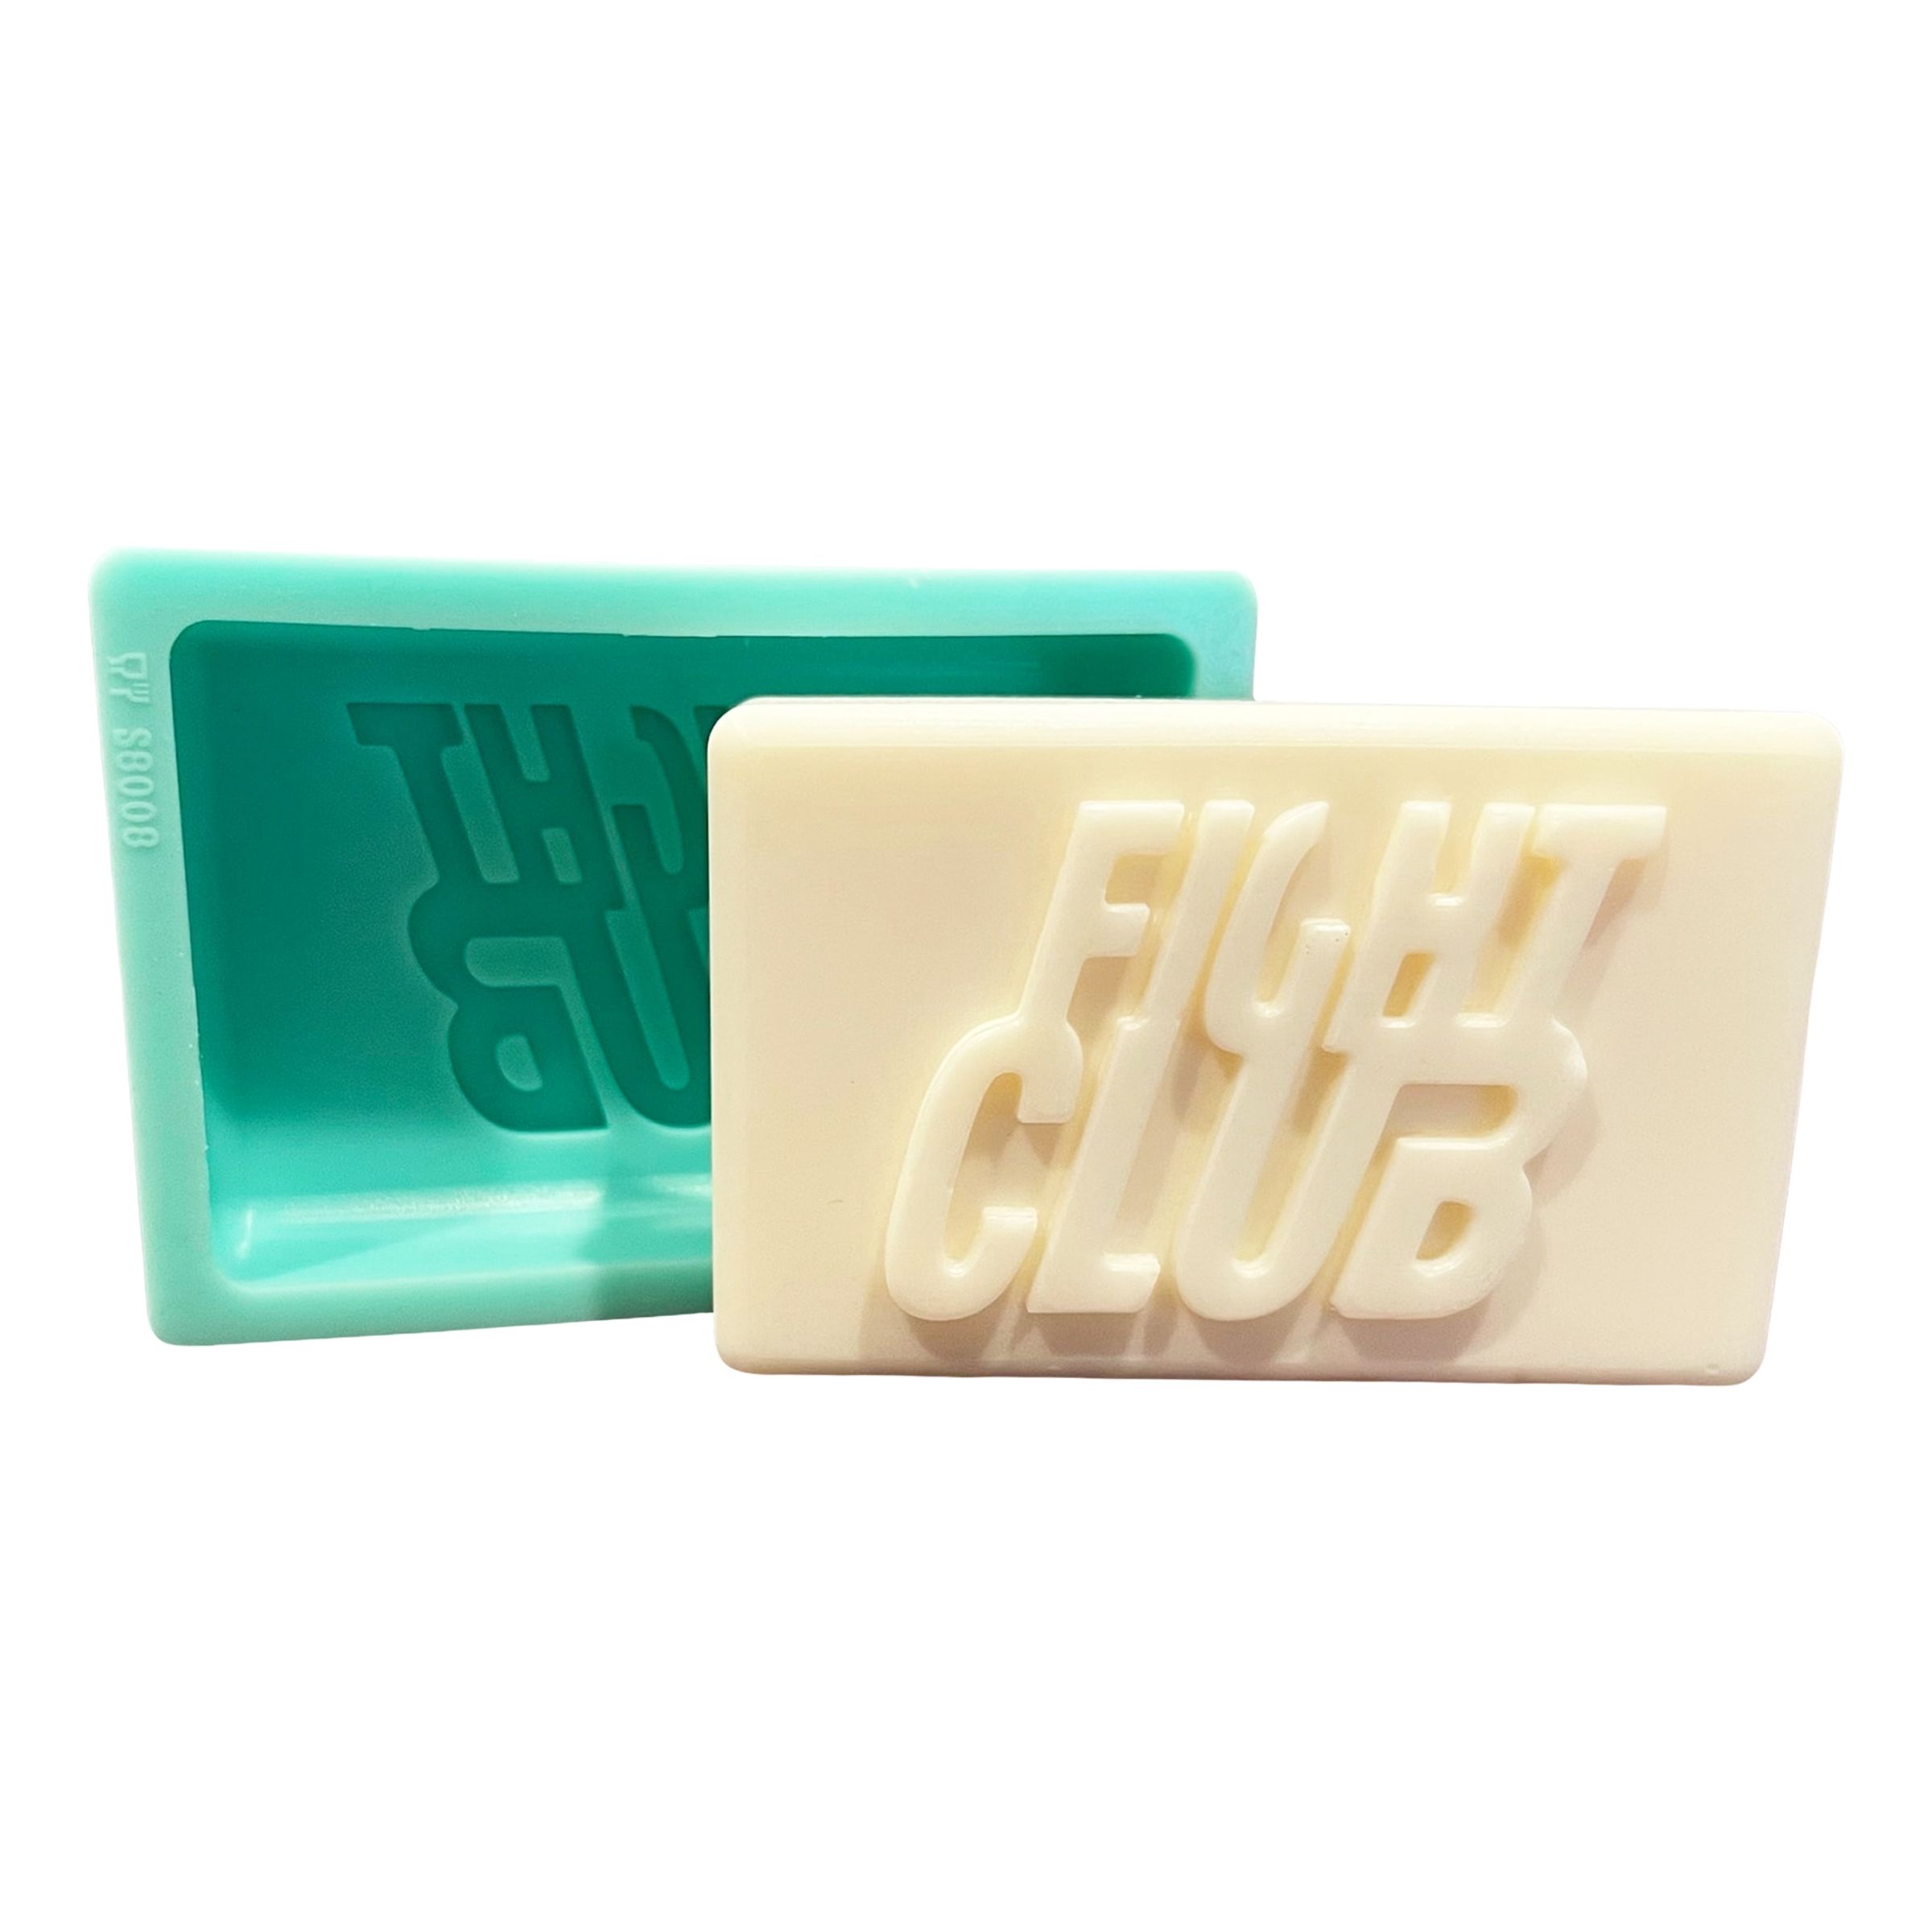 Läs mer om Tvålform Fight Club